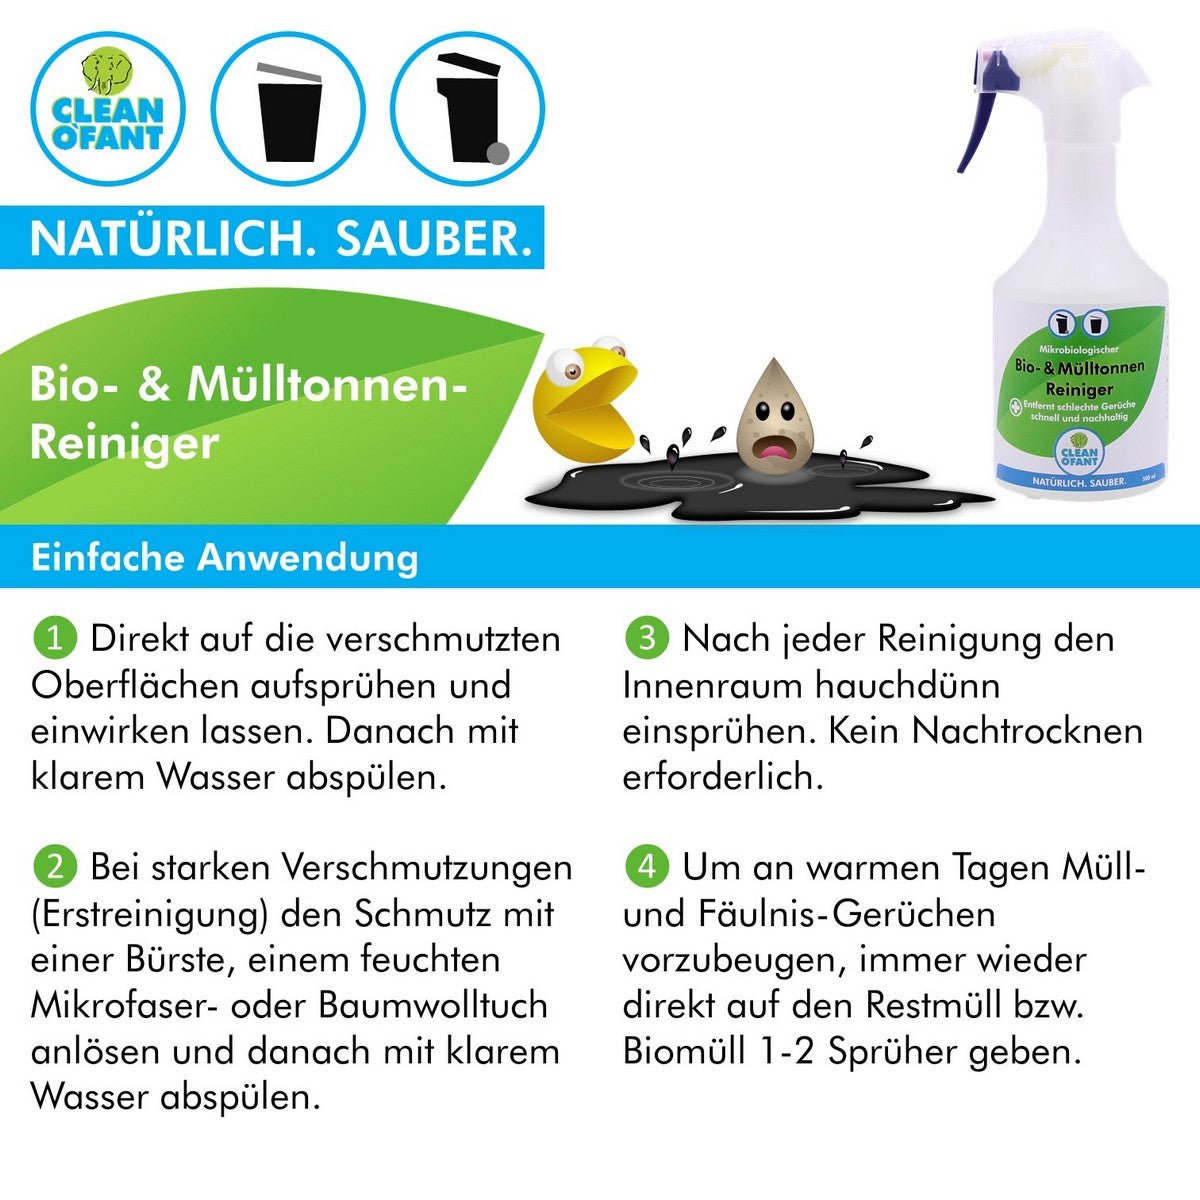 Bio- & Mülltonnen-Reiniger - mikrobiologisch - 4,8 Liter inkl. Sprühflasche leer - CLEANOFANT